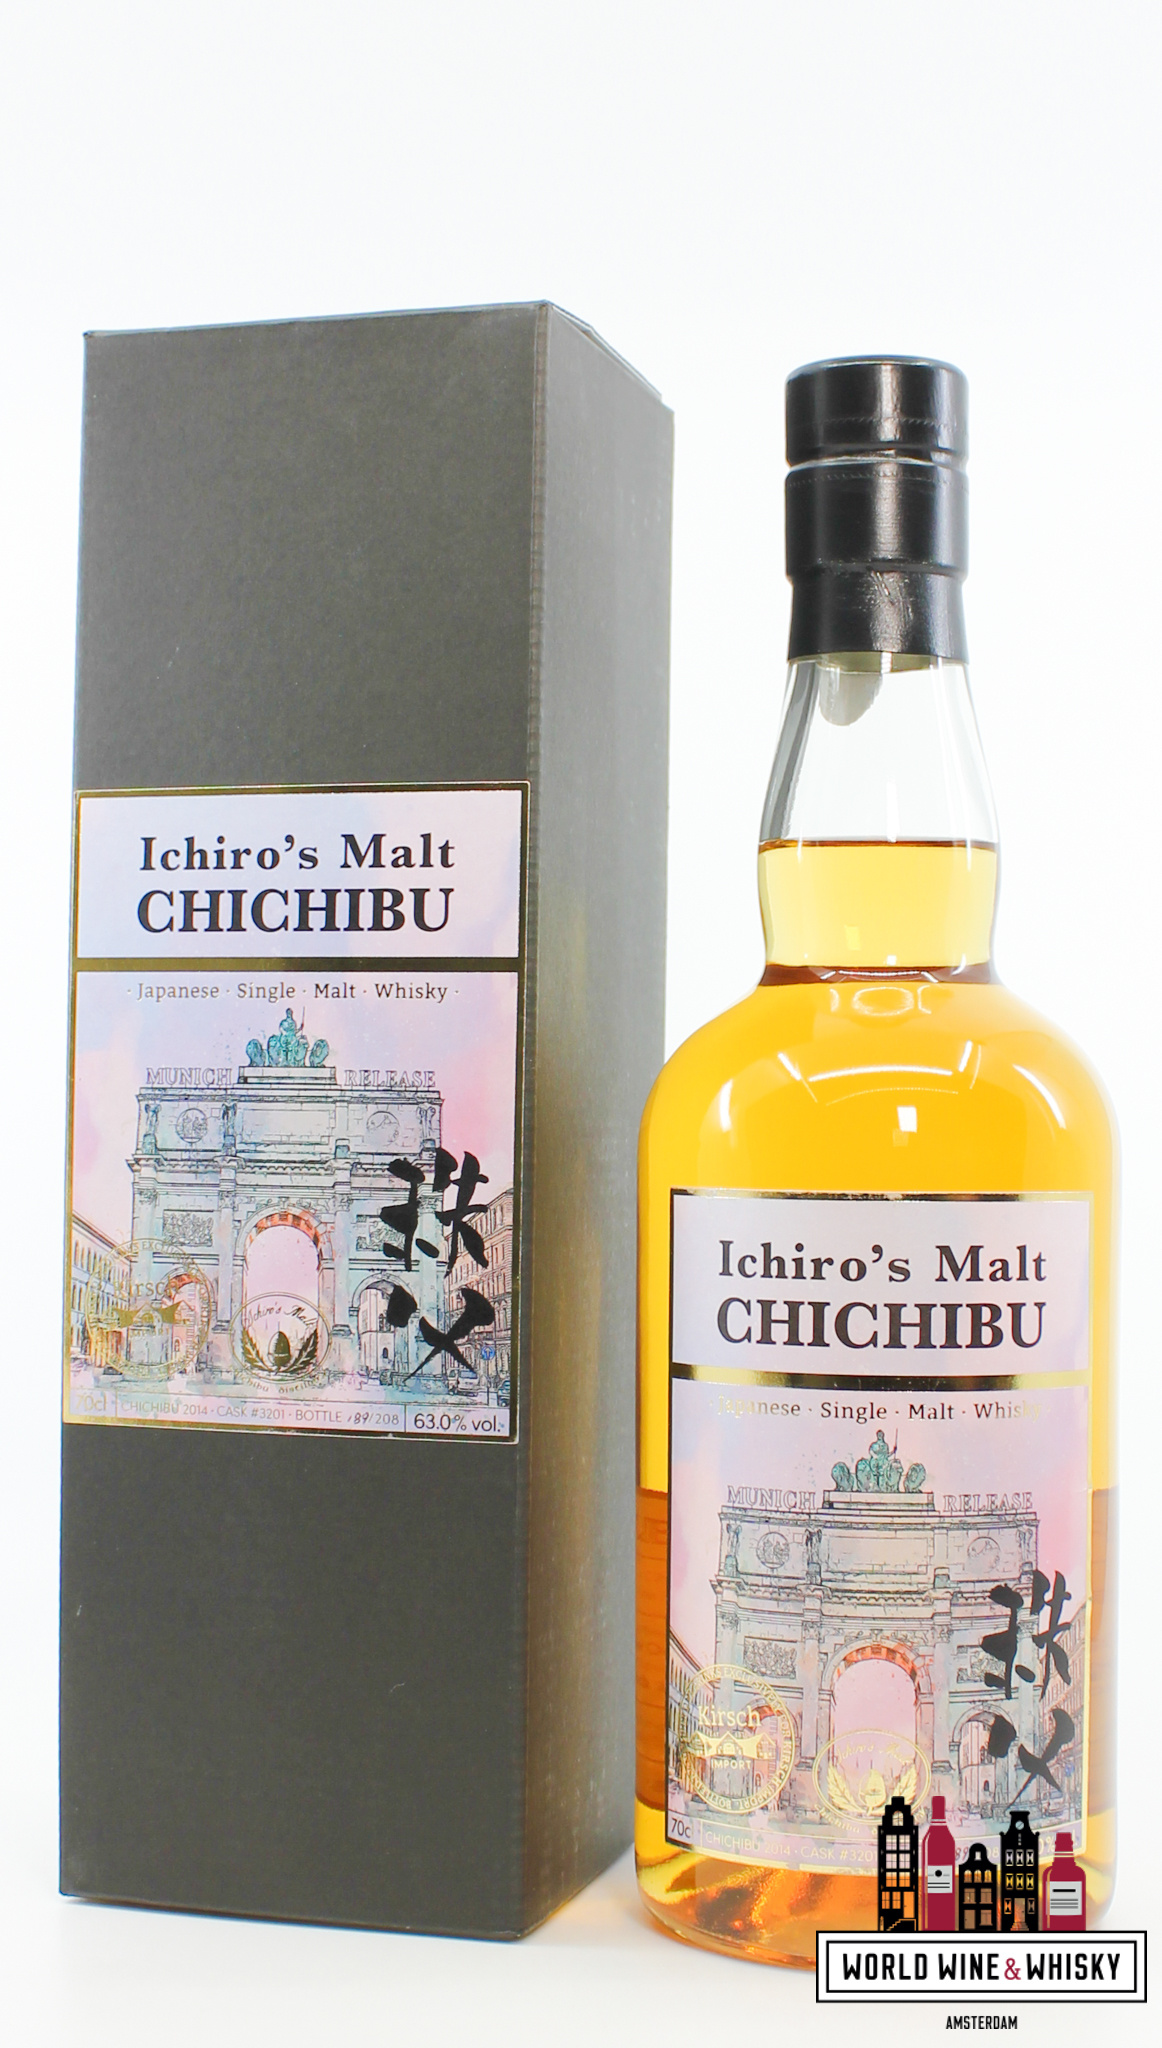 Chichibu Chichibu 2014 - Cask 3201 - Munich Release - Kirsch Import Germany 63% (1 of 208)